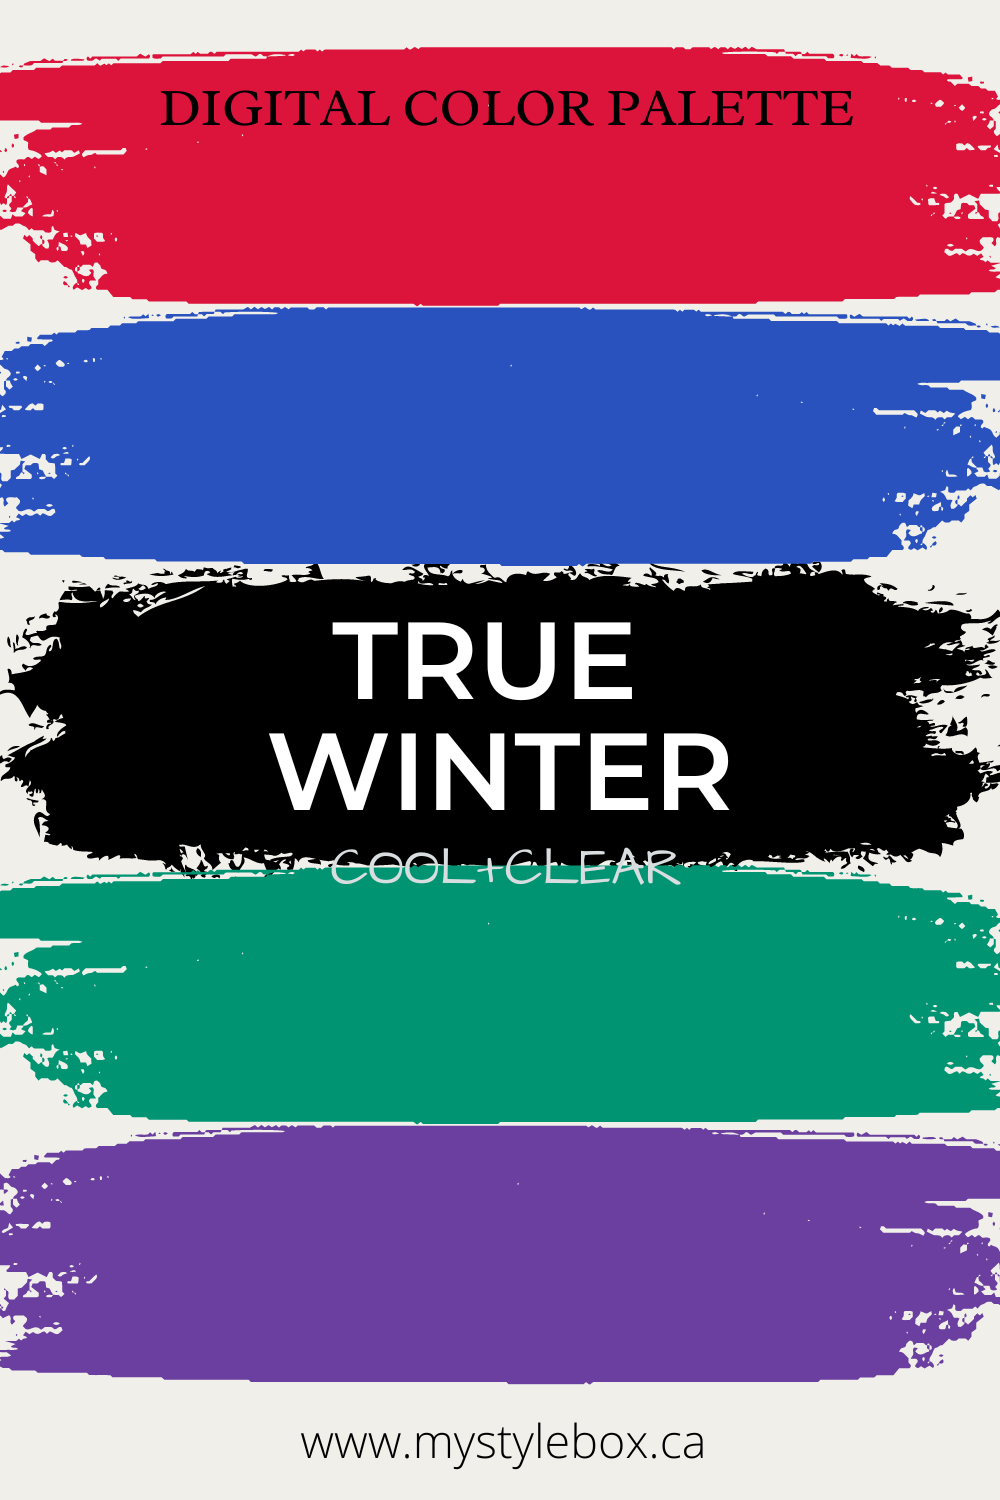 Paleta de colores verdadera (fresca) de la temporada de invierno